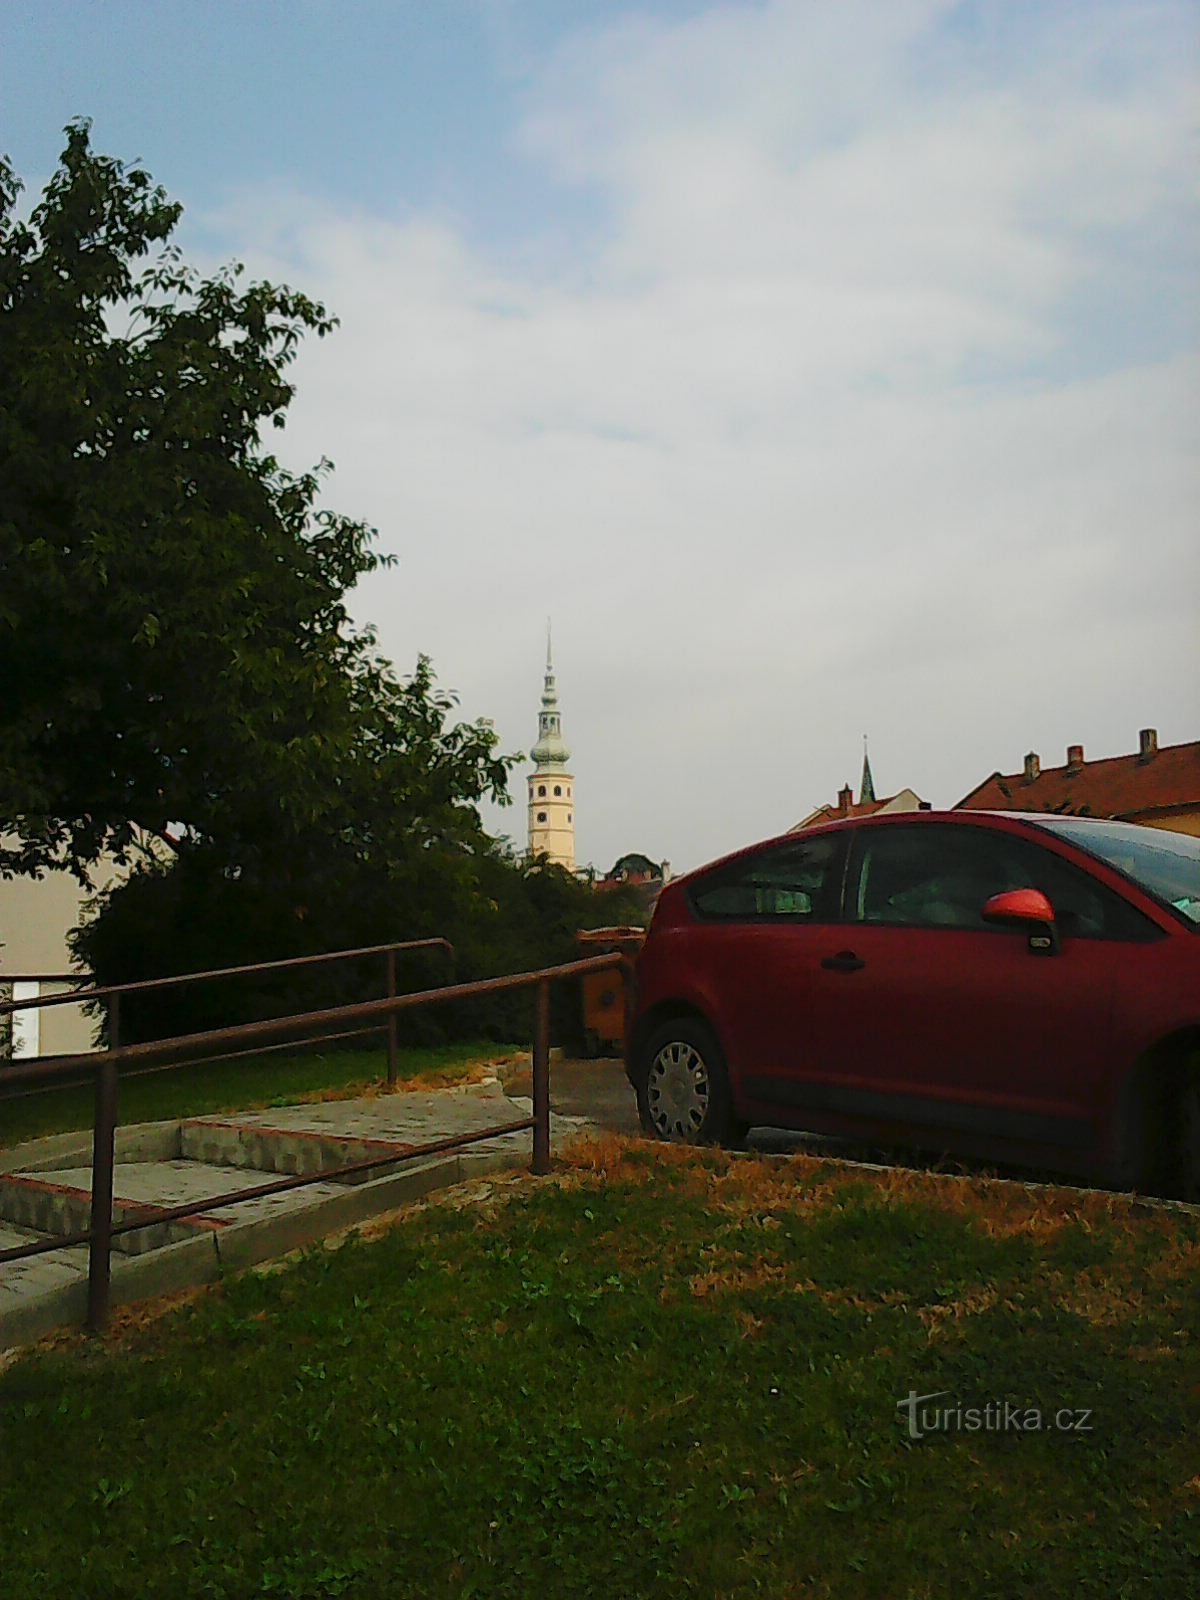 从远处可以看到 Tovačovské 城堡的塔楼 - 我的主要参考点 :)